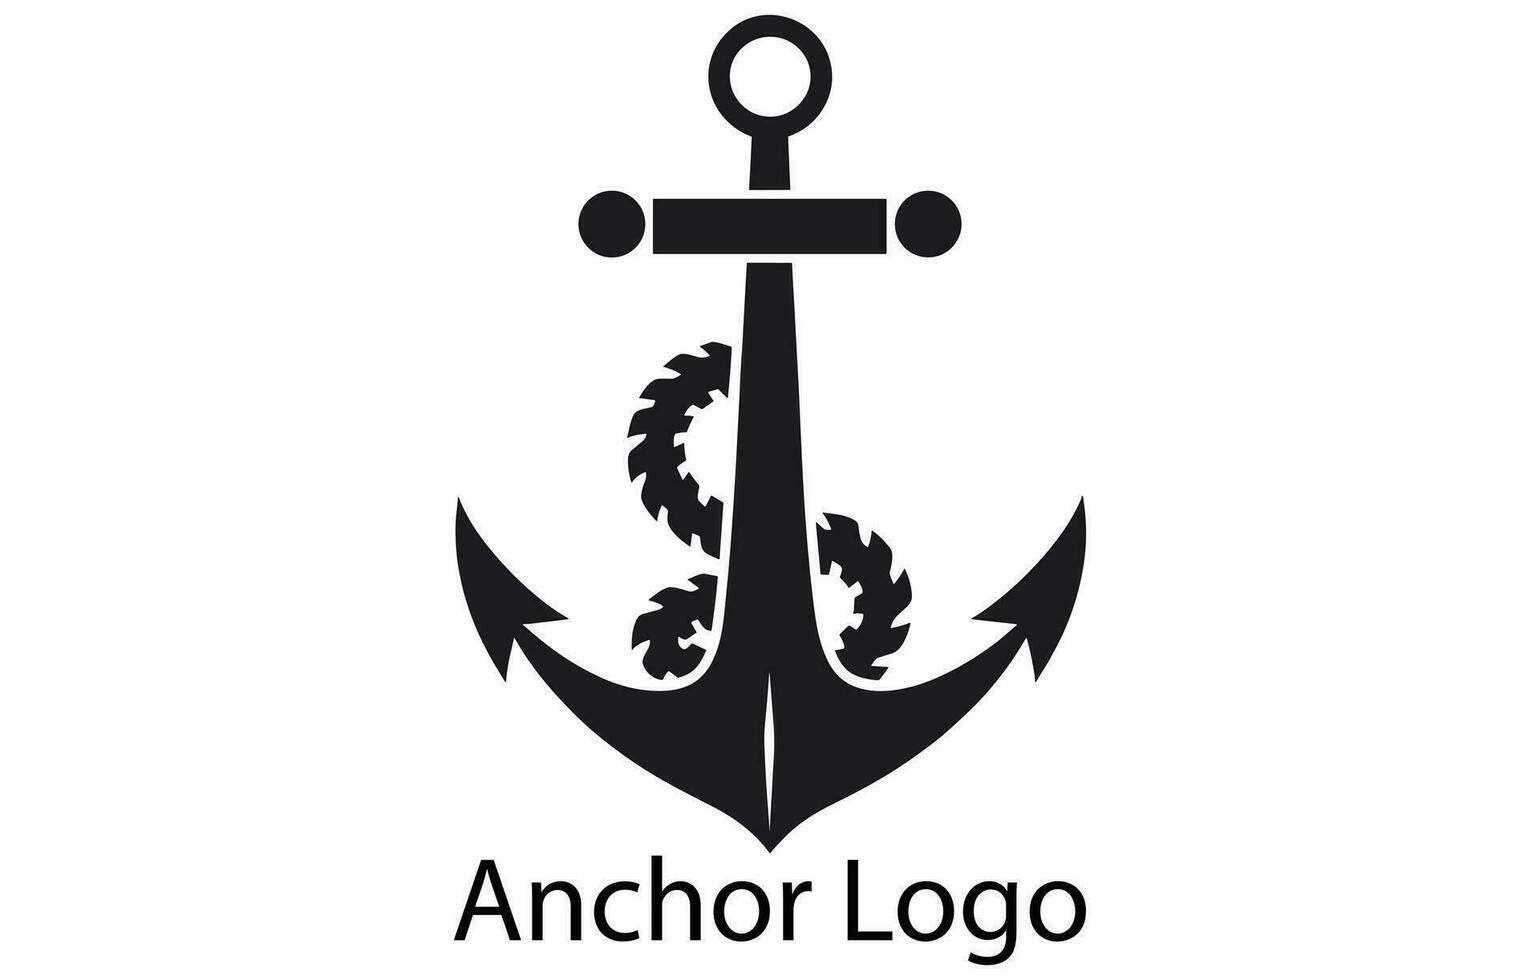 Anchor Ship Yacht Luxury Badge Vector Logo, Anchor logo icon design vector template,